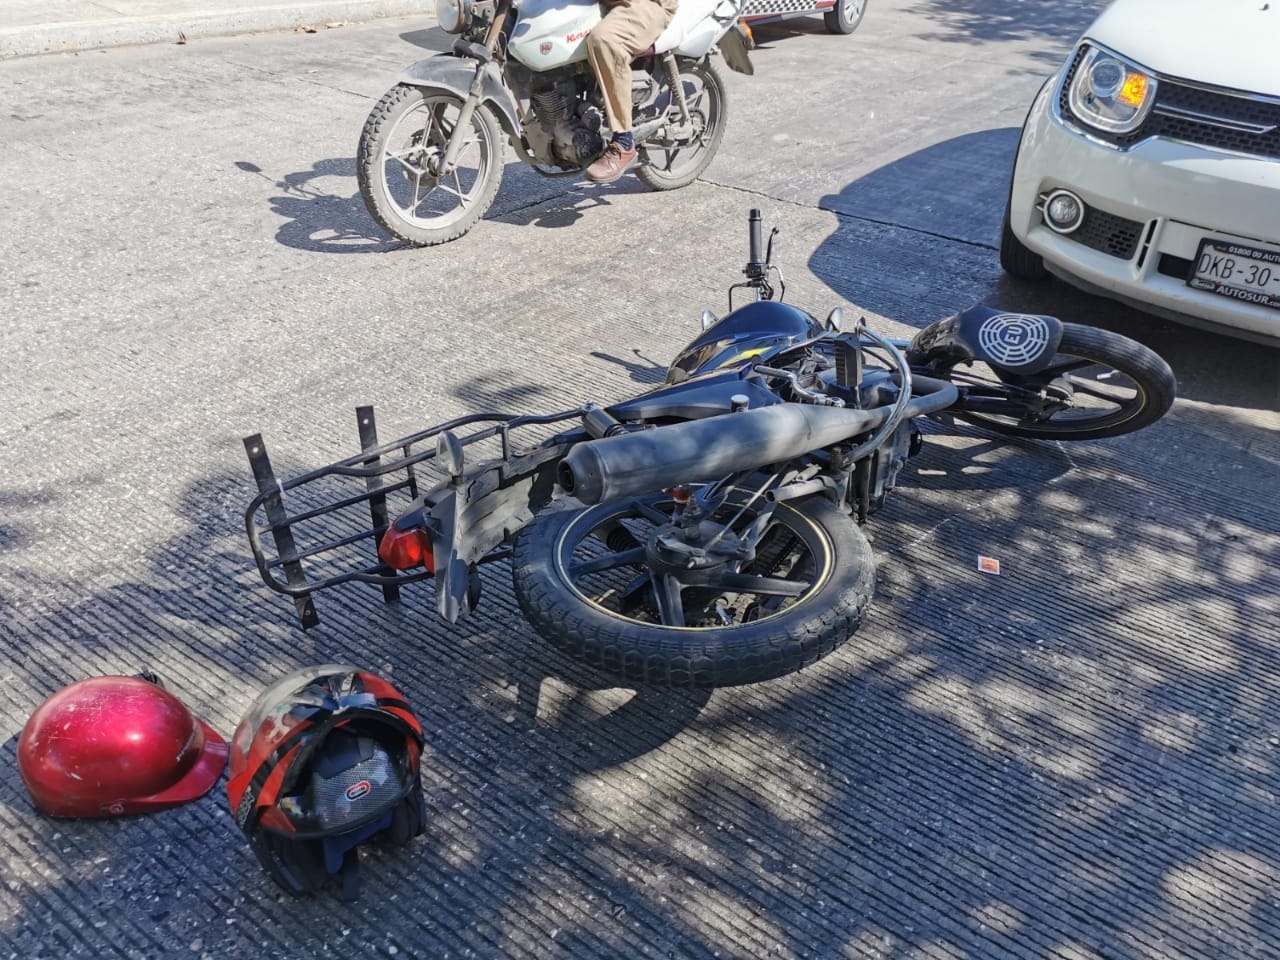 El motociclista terminó en el suelo luego del descuido del taxista